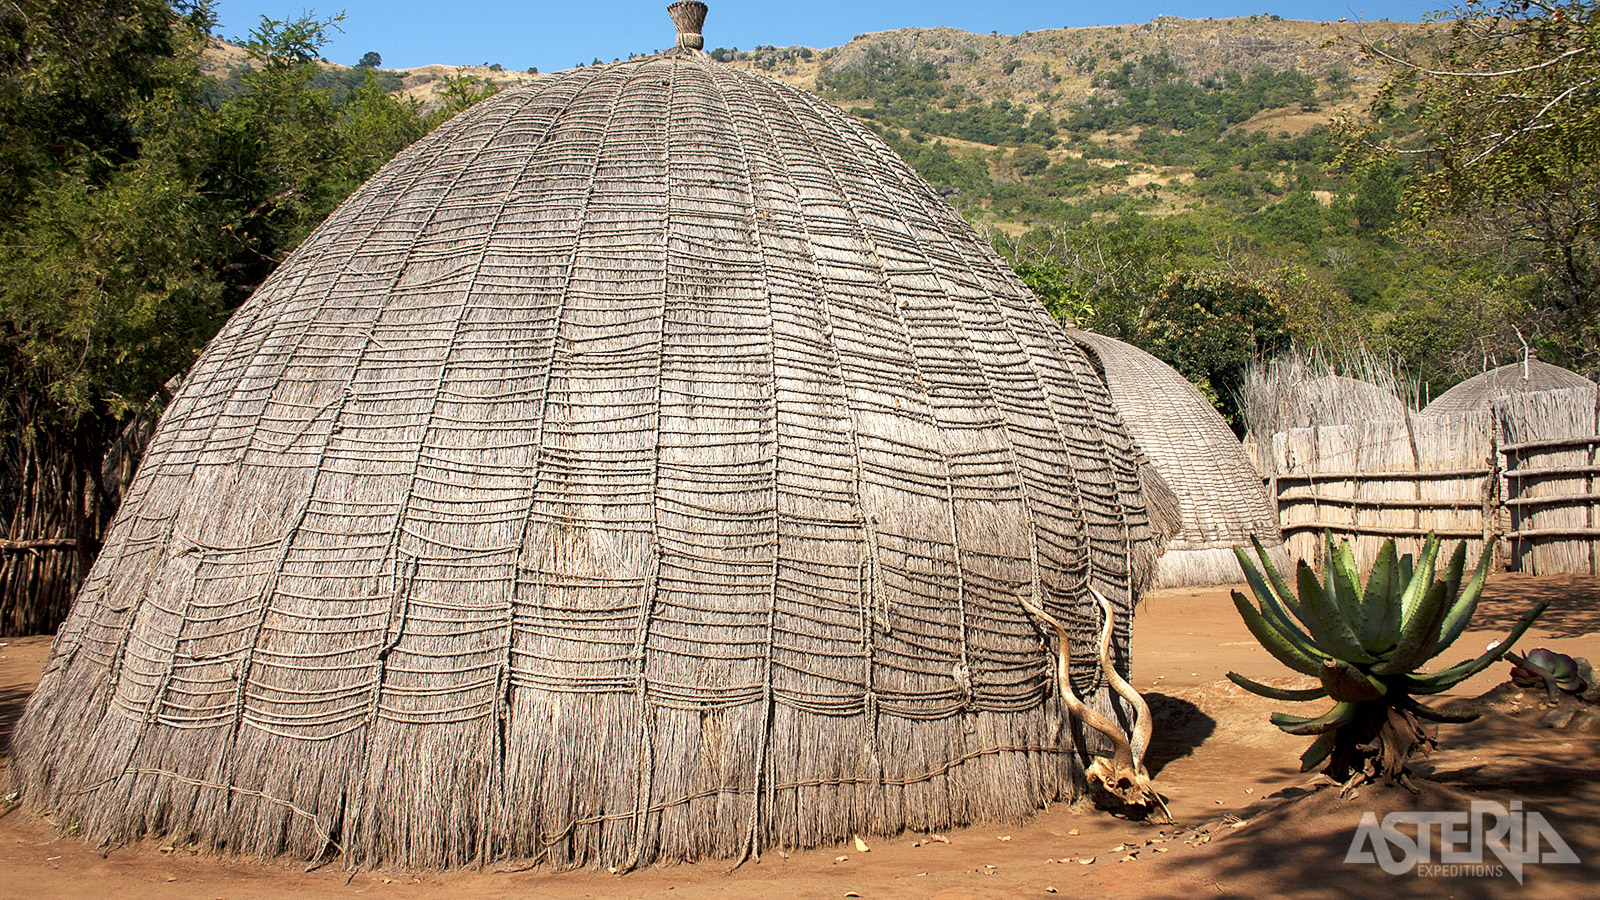 Het koninkrijk Swaziland heeft een prachtig groen, heuvelachtig landschap en typische Afrikaanse dorpjes